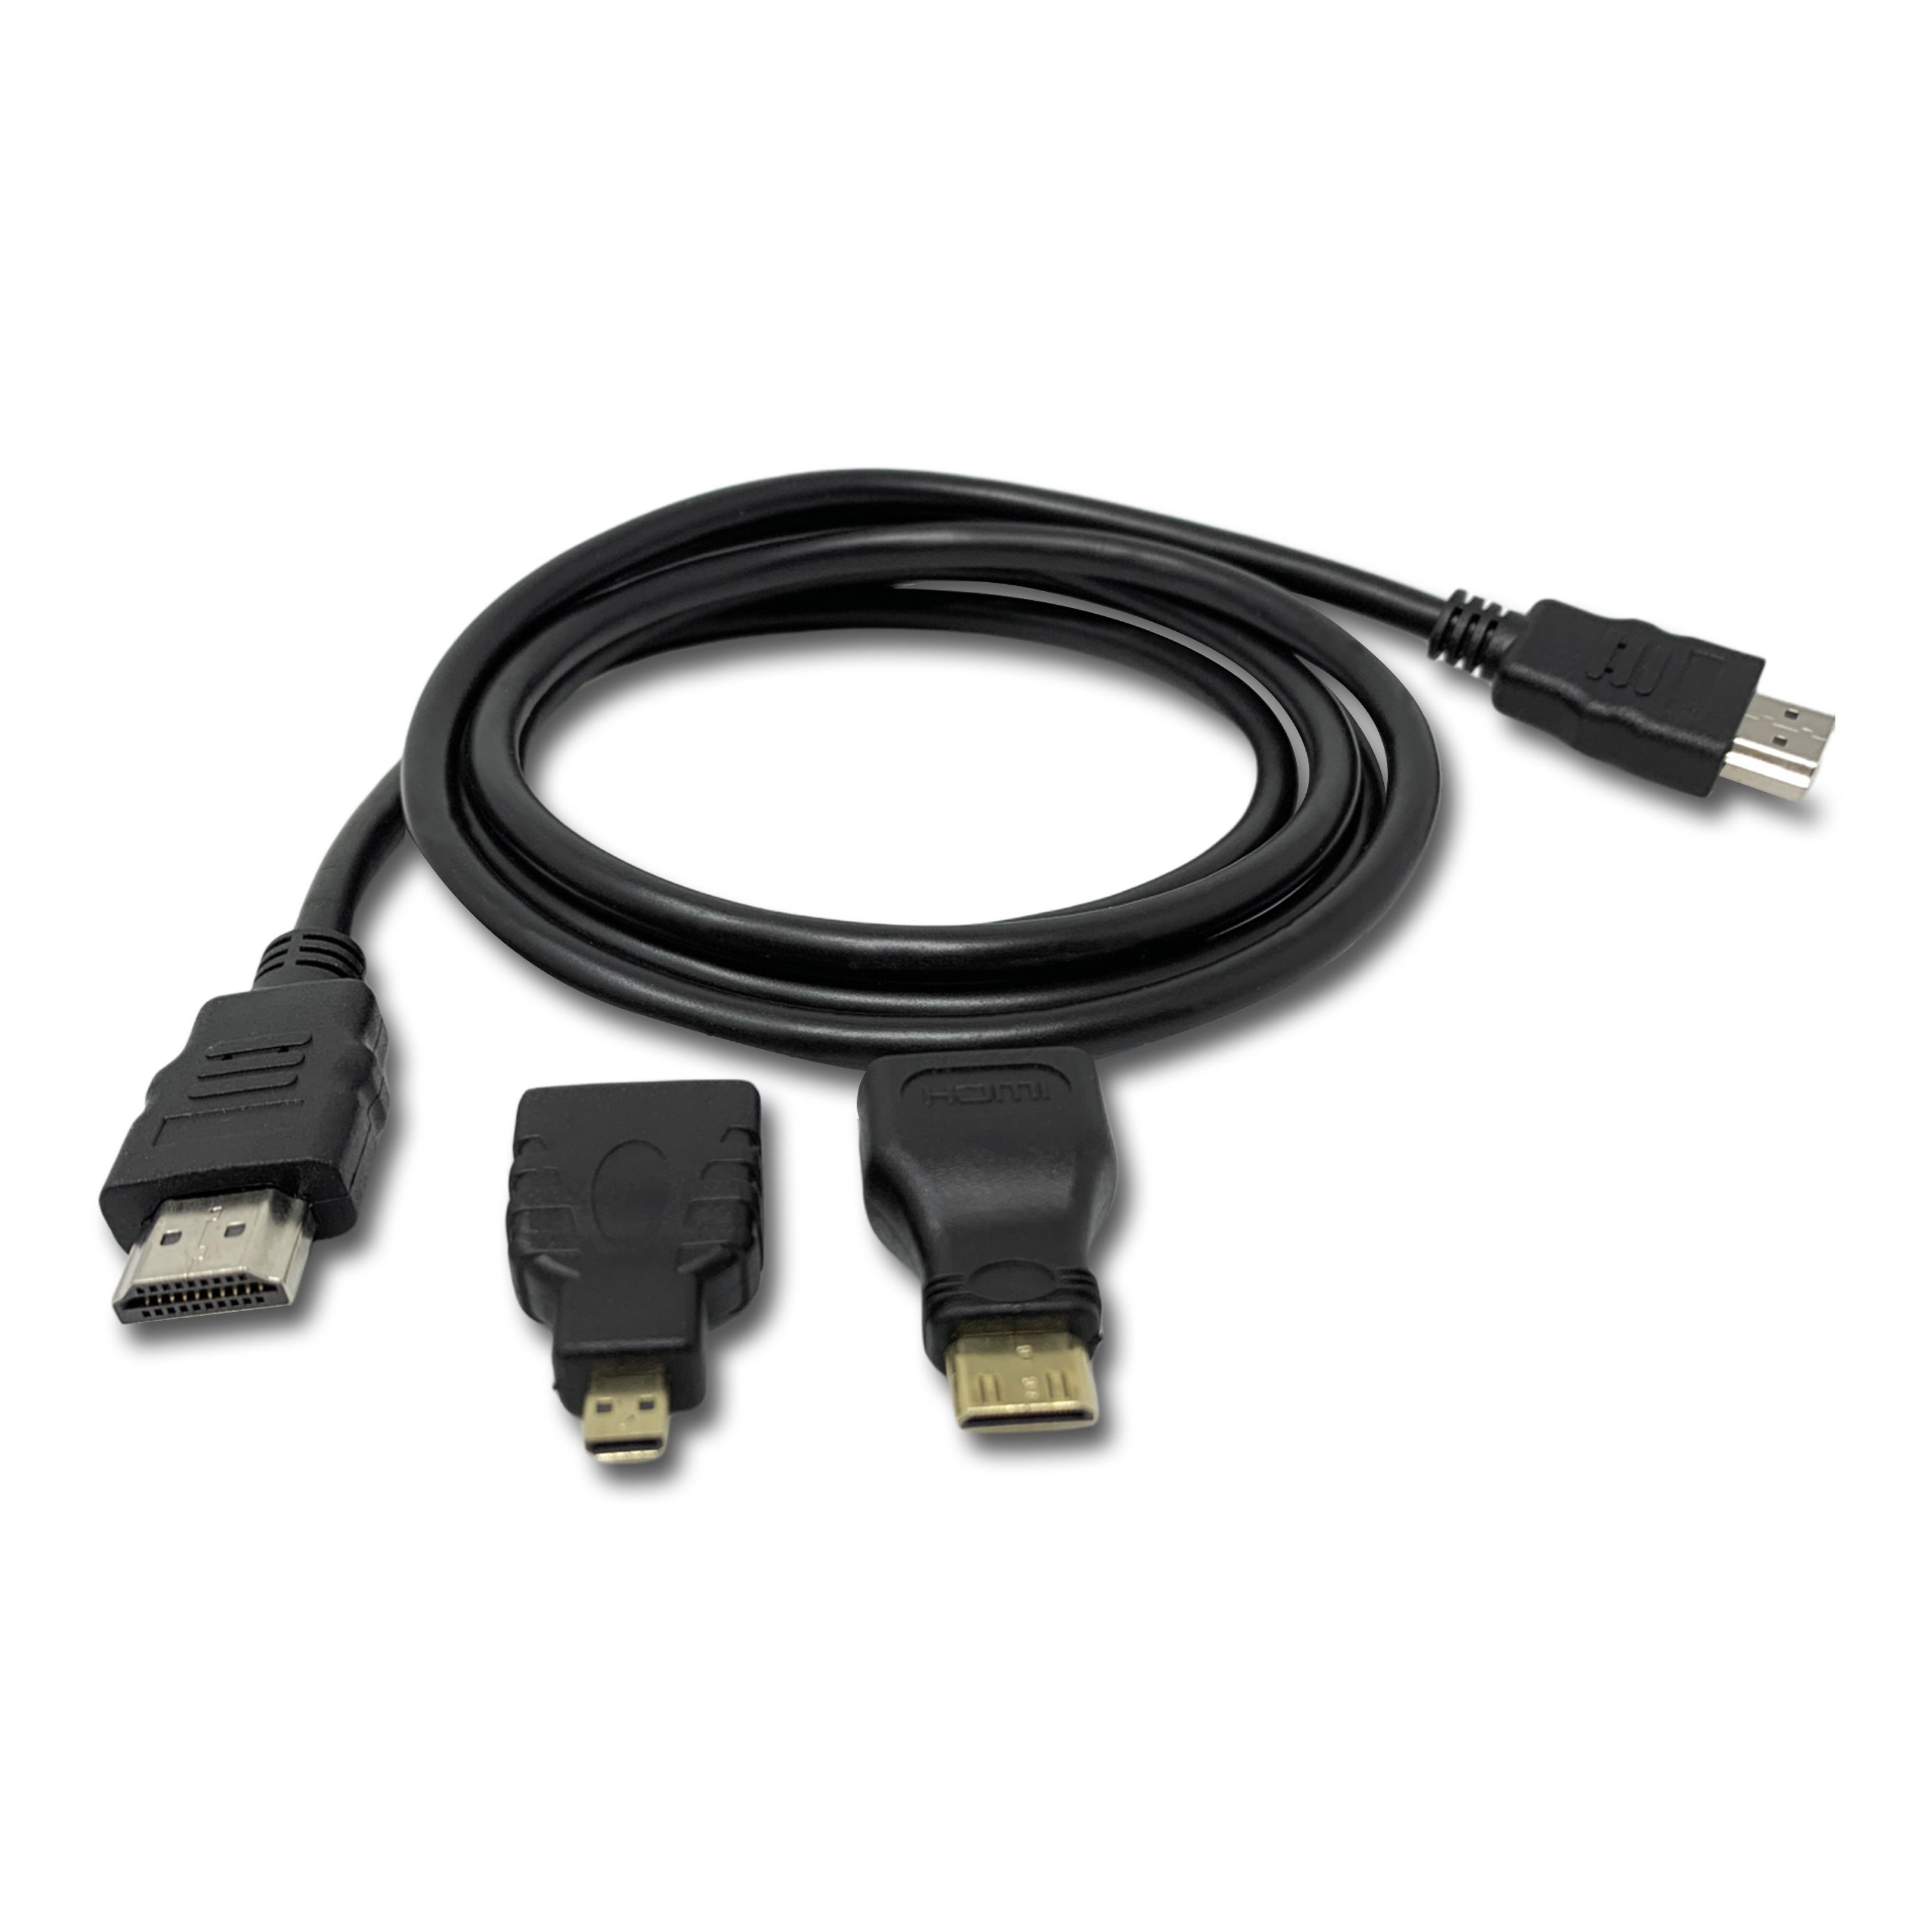 H-basics »HDMI-Kabel - 3 in 1 Mini-HDMI (C-Typ), Micro-HDMI (D-Typ) Adapter,  für Fernseher / Projektor / Monitor / Digitalkamera, unterstützt Full HDTV  Ready 3D – 1080p« HDMI-Kabel online kaufen | OTTO